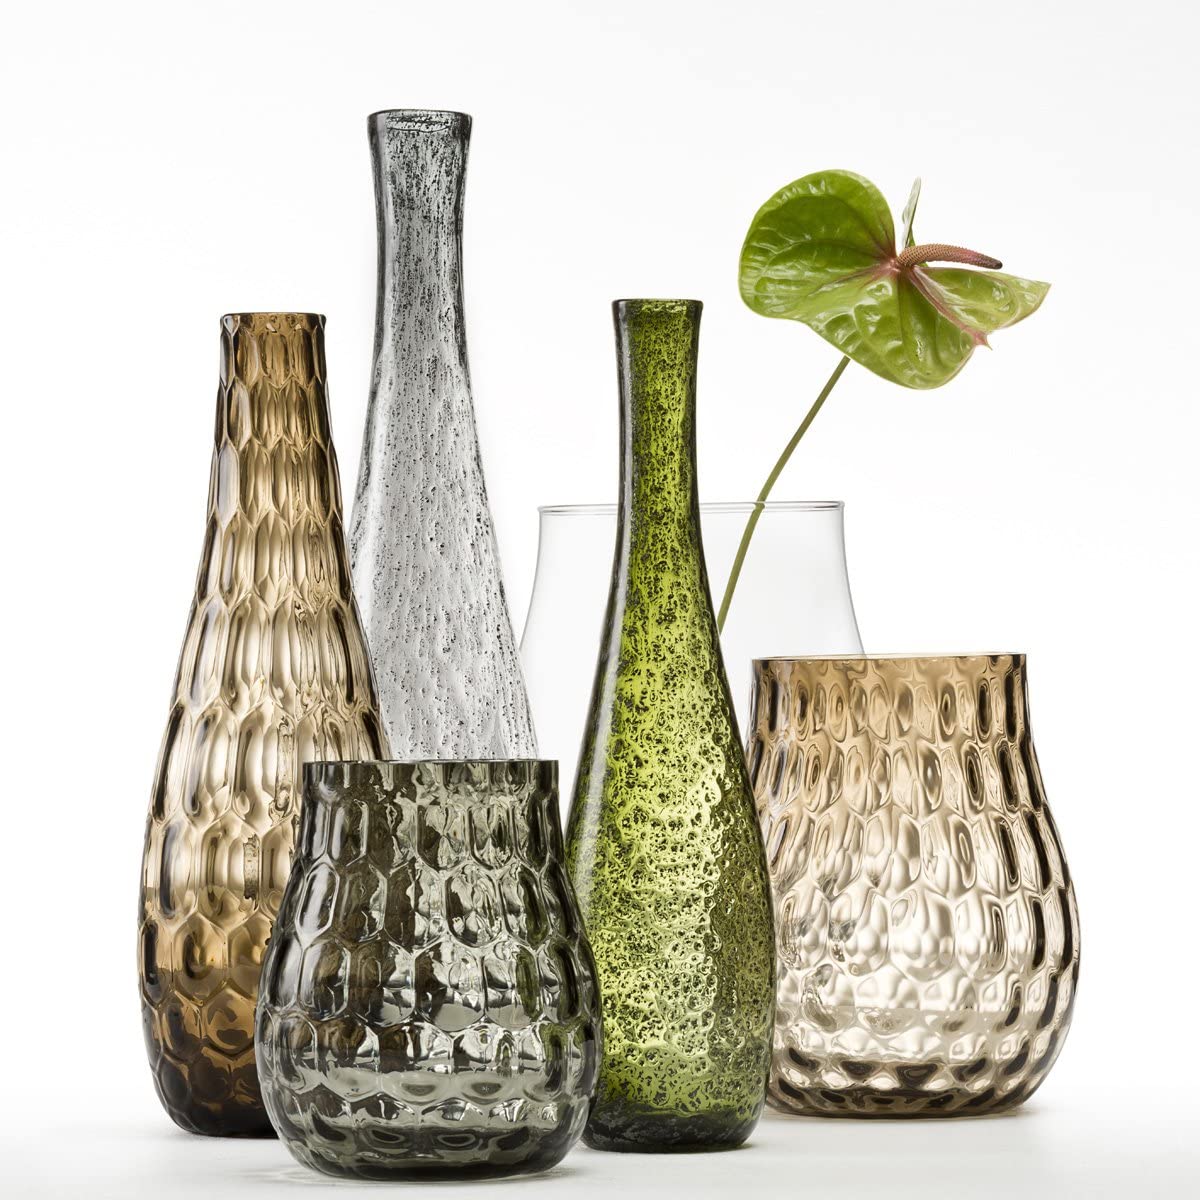 Leonardo Giardino 034907 Glass Vase Handmade Decorative Vase in Green Bulbous Flower Vase Height 400 mm